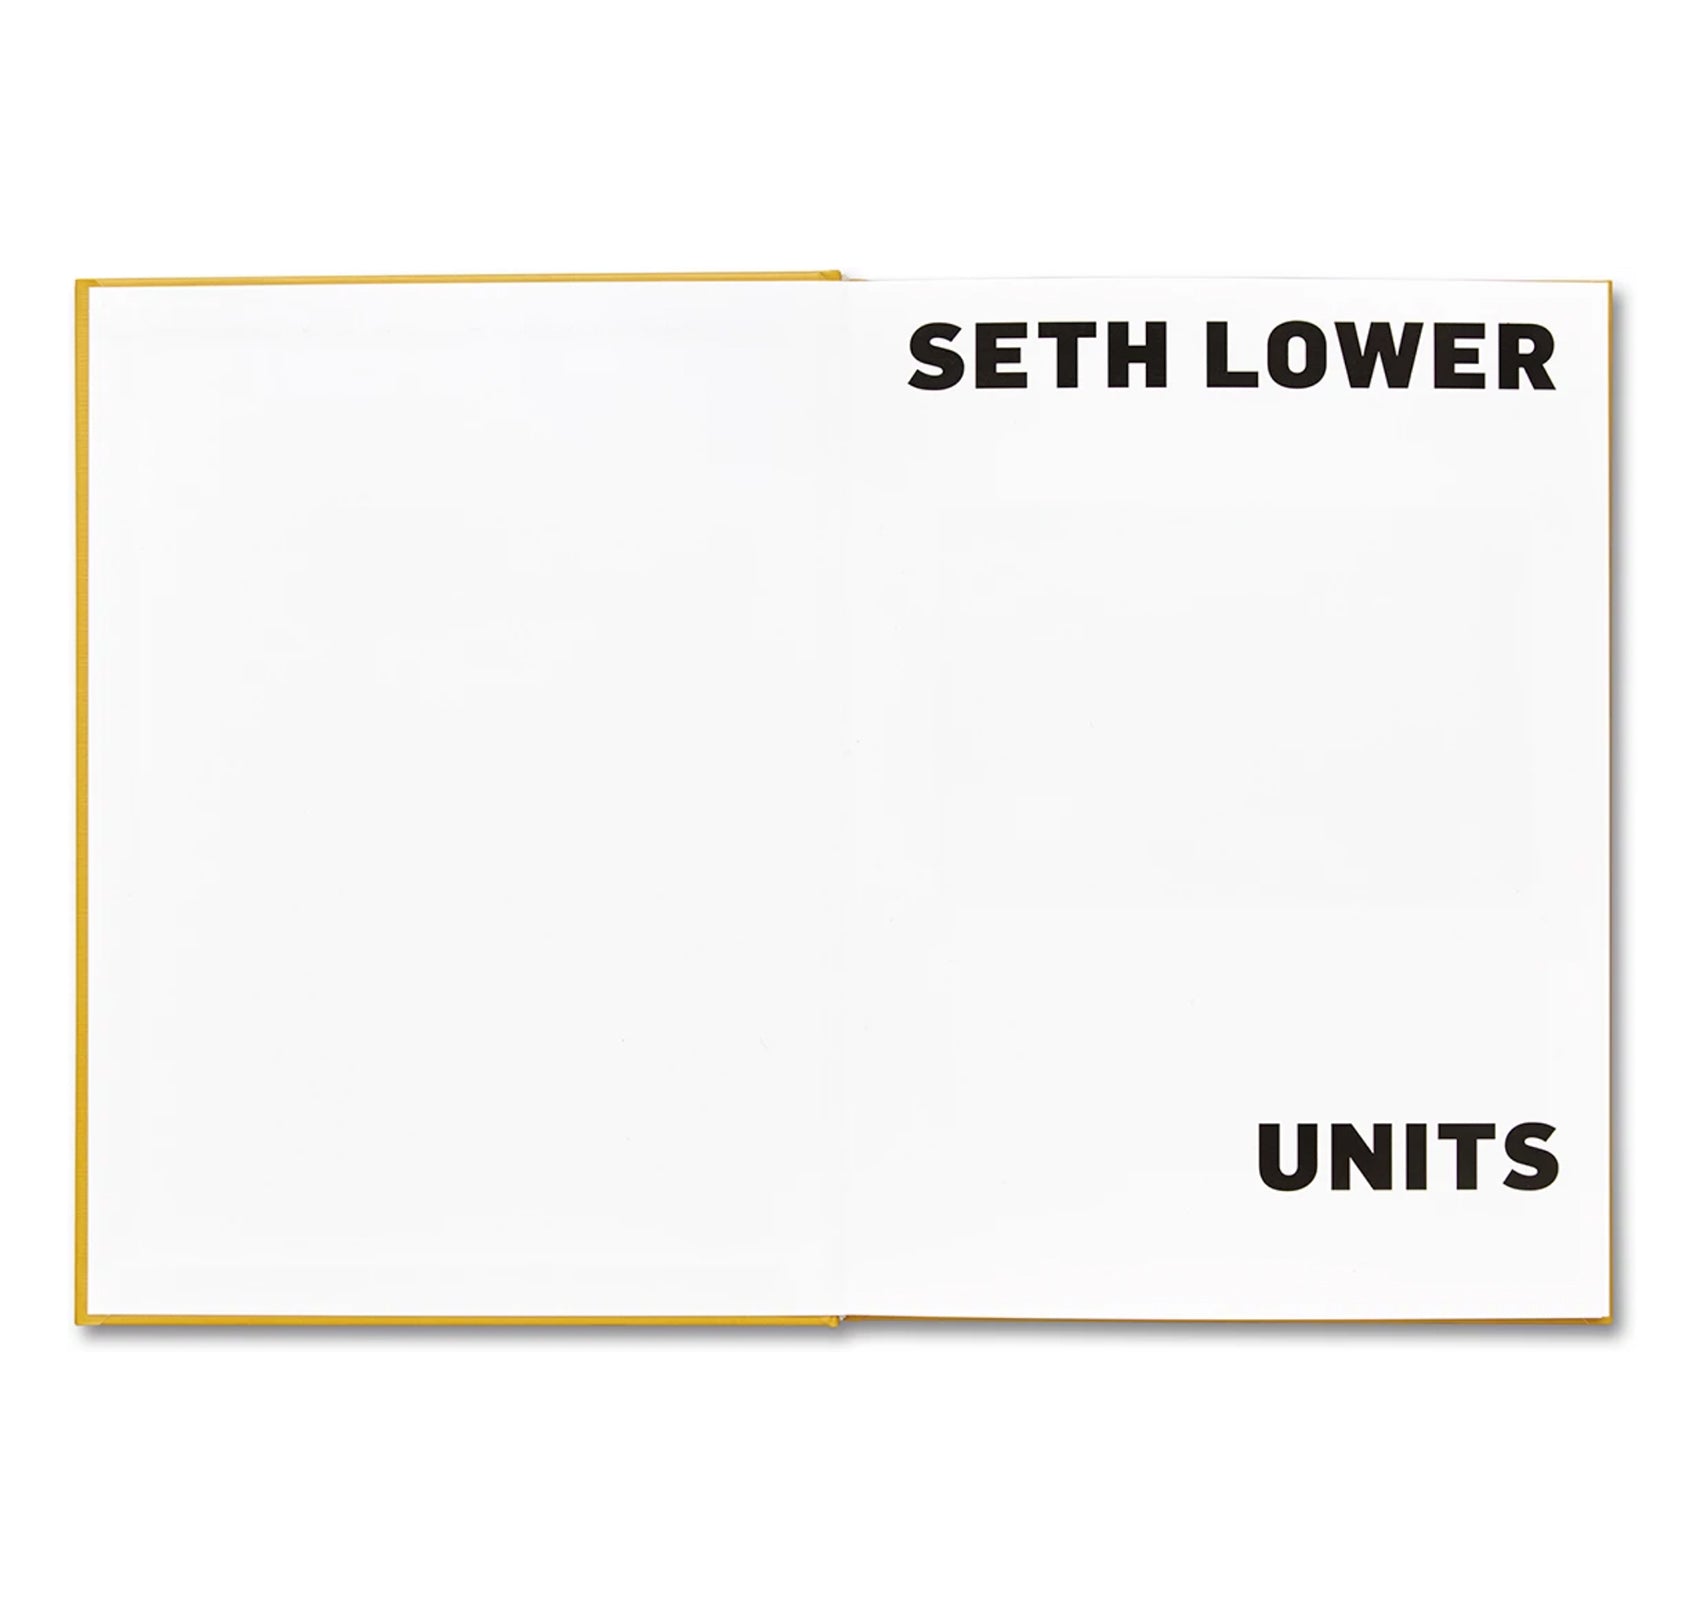 UNITS by Seth Lower